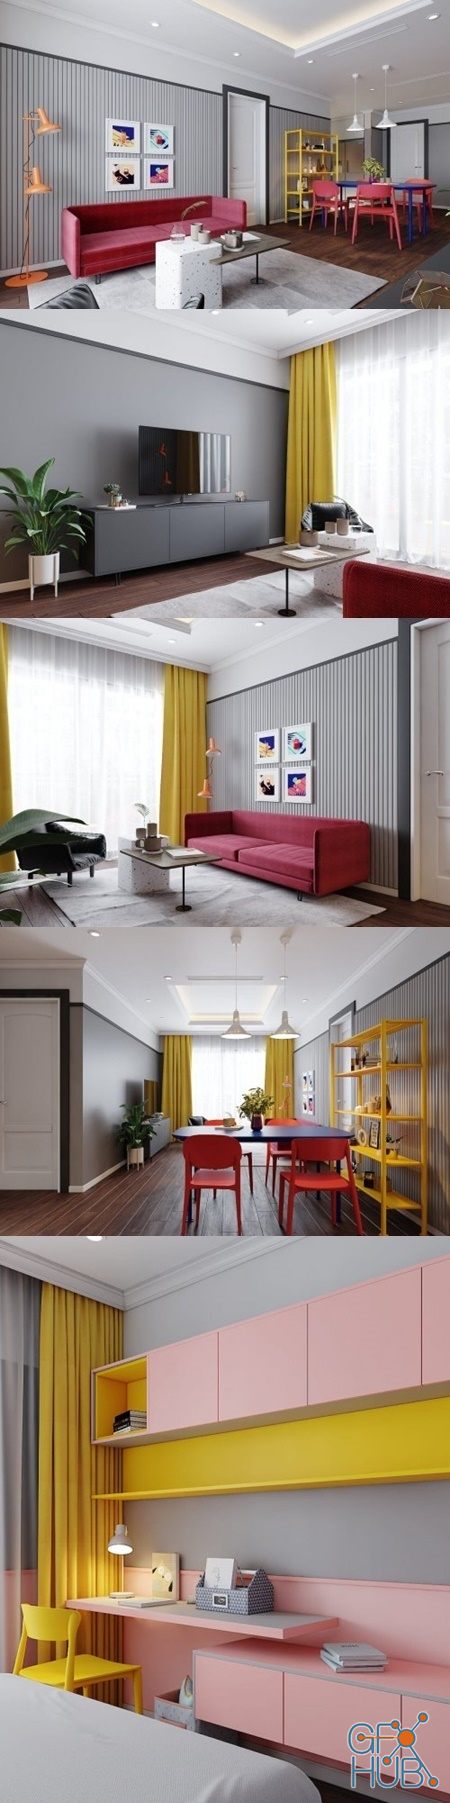 Interior Apartment Scene By KienTrungNguyen